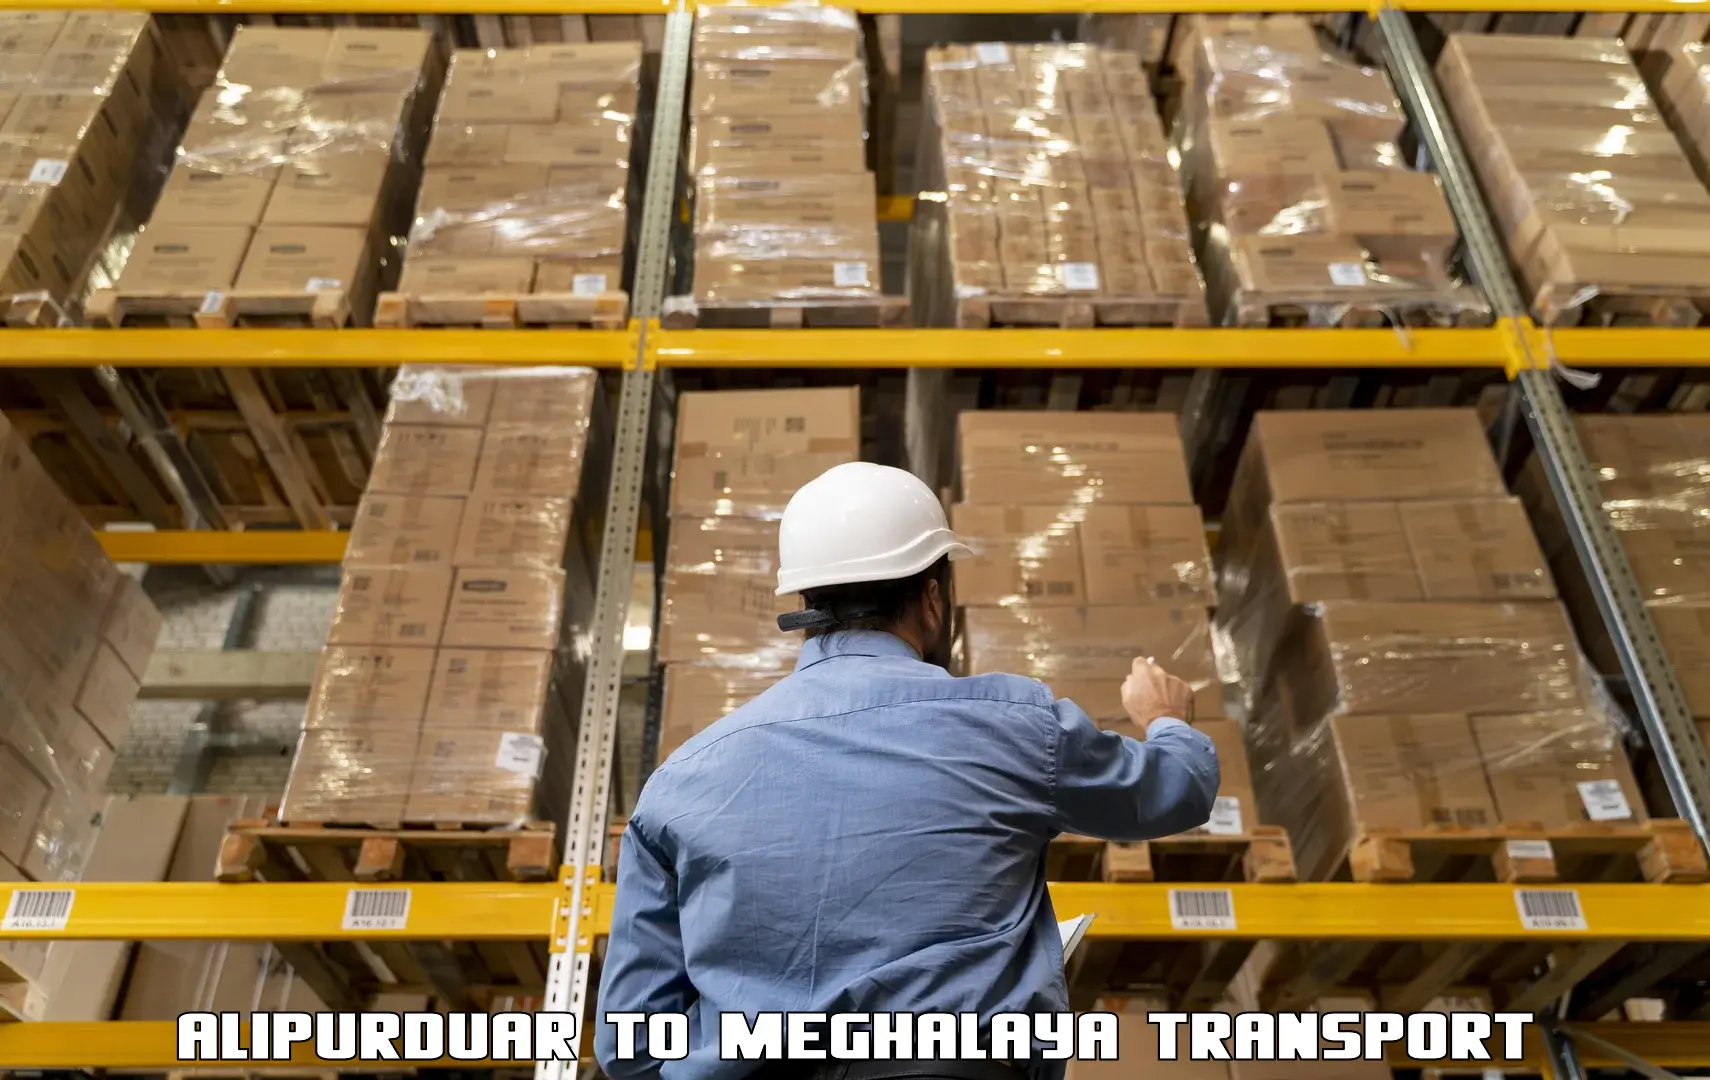 Container transport service Alipurduar to Williamnagar